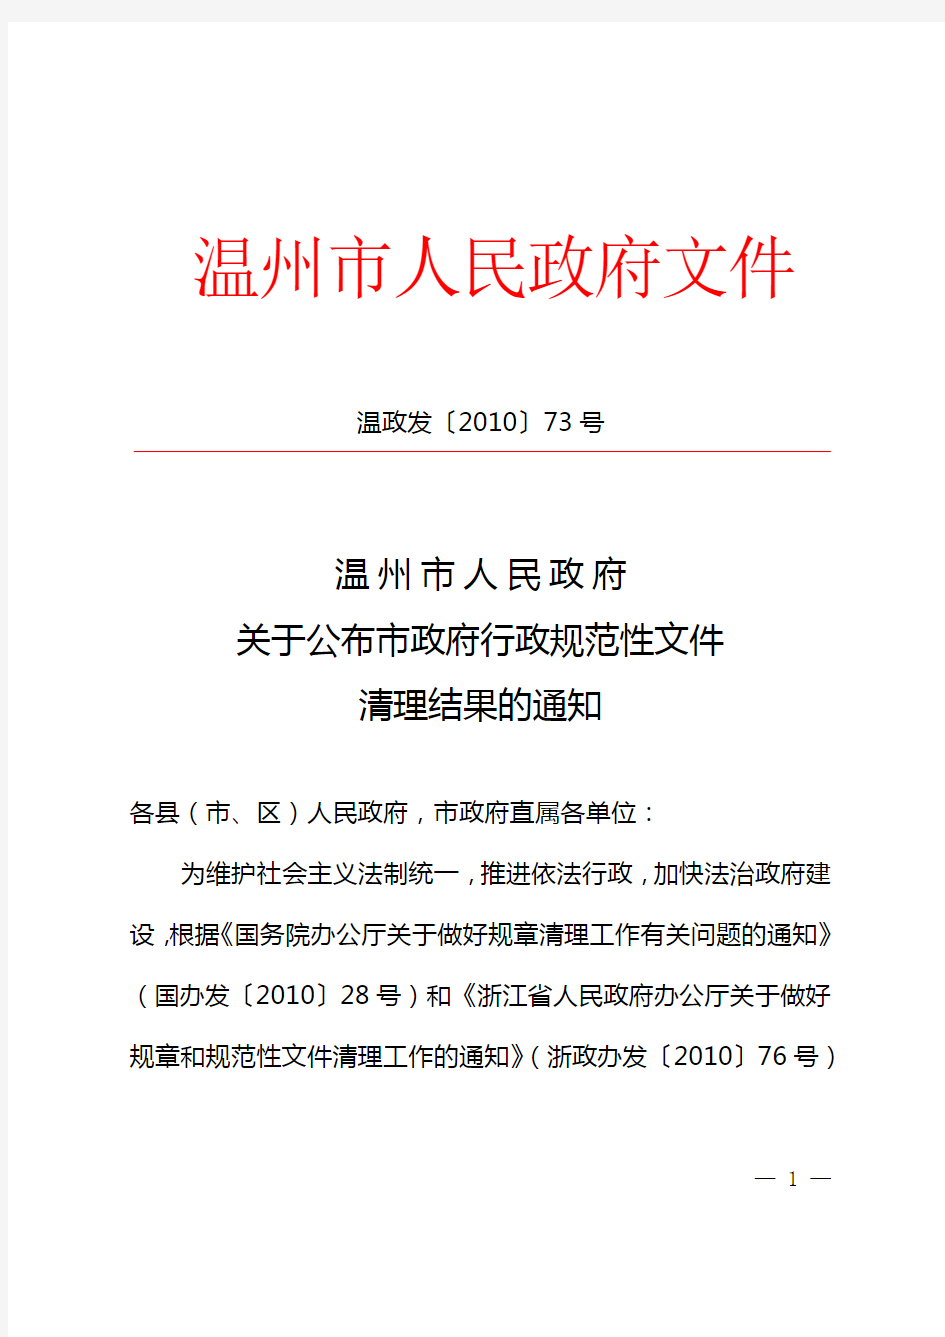 温州市人民政府关于公布市政府行政规范性文件清理结果的通知(温政发〔2010〕73号)